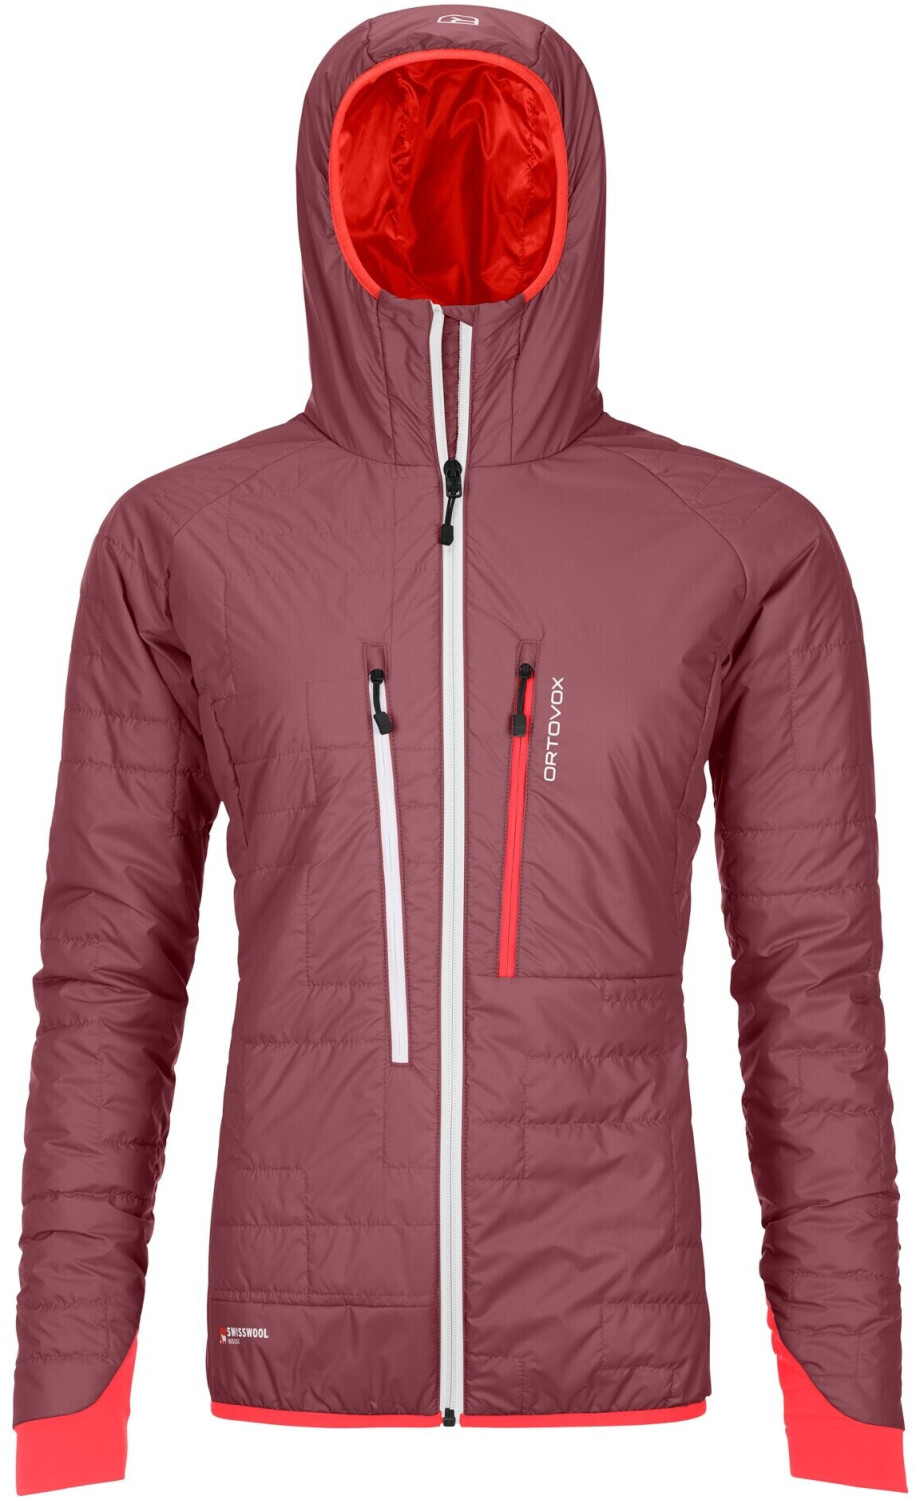 Ortovox Swisswool Piz BOÈ ab Preisvergleich (61065) 206,90 | mountain rose € Women bei Jacket